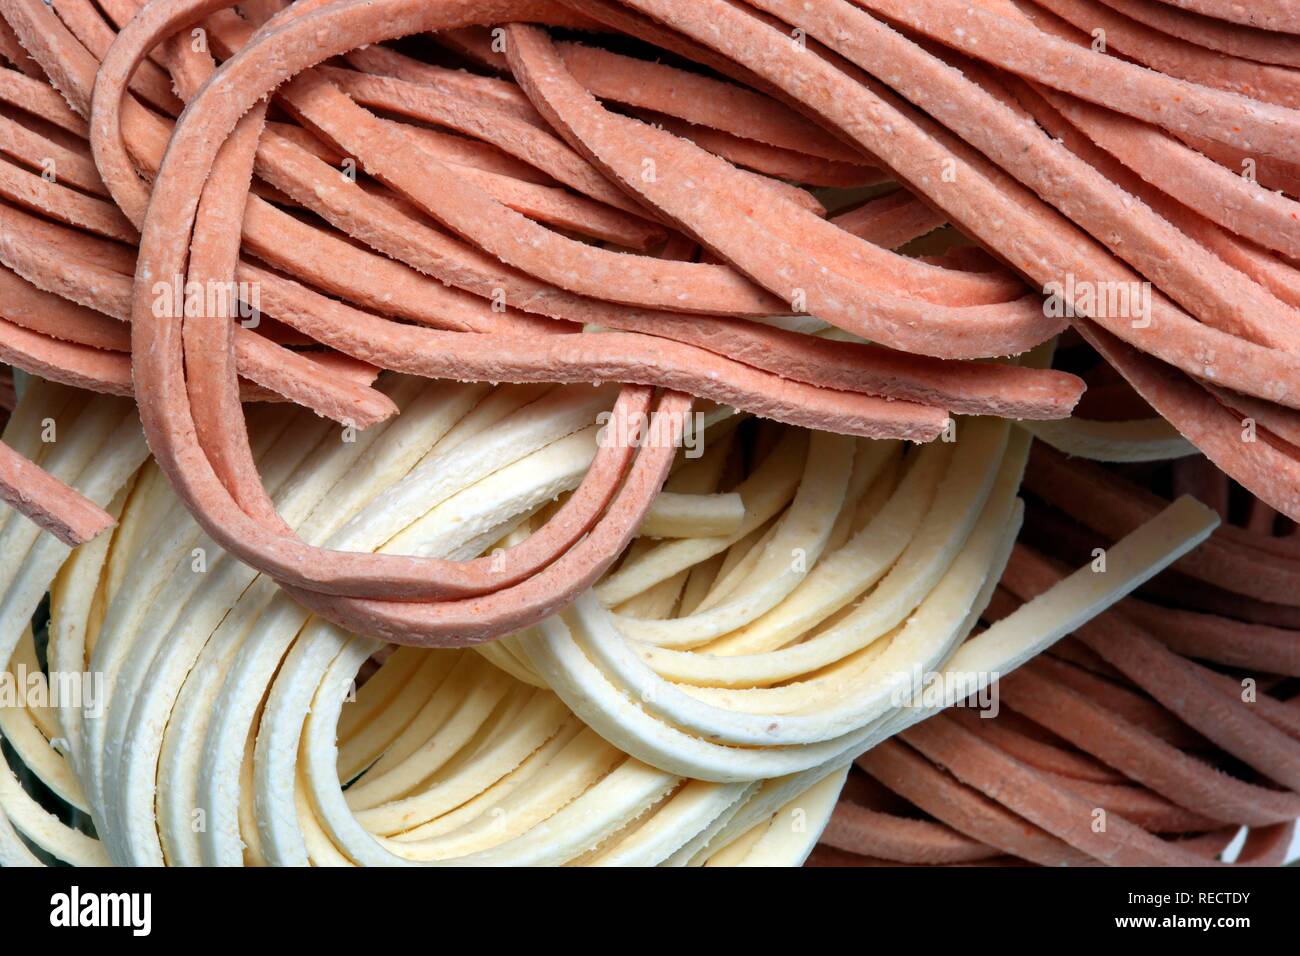 Stringozzi e peperoncino Stringozzi, pasta di semola di grano duro colorato e aromatizzato con peperoncino, originariamente da Umbria, Italia Foto Stock